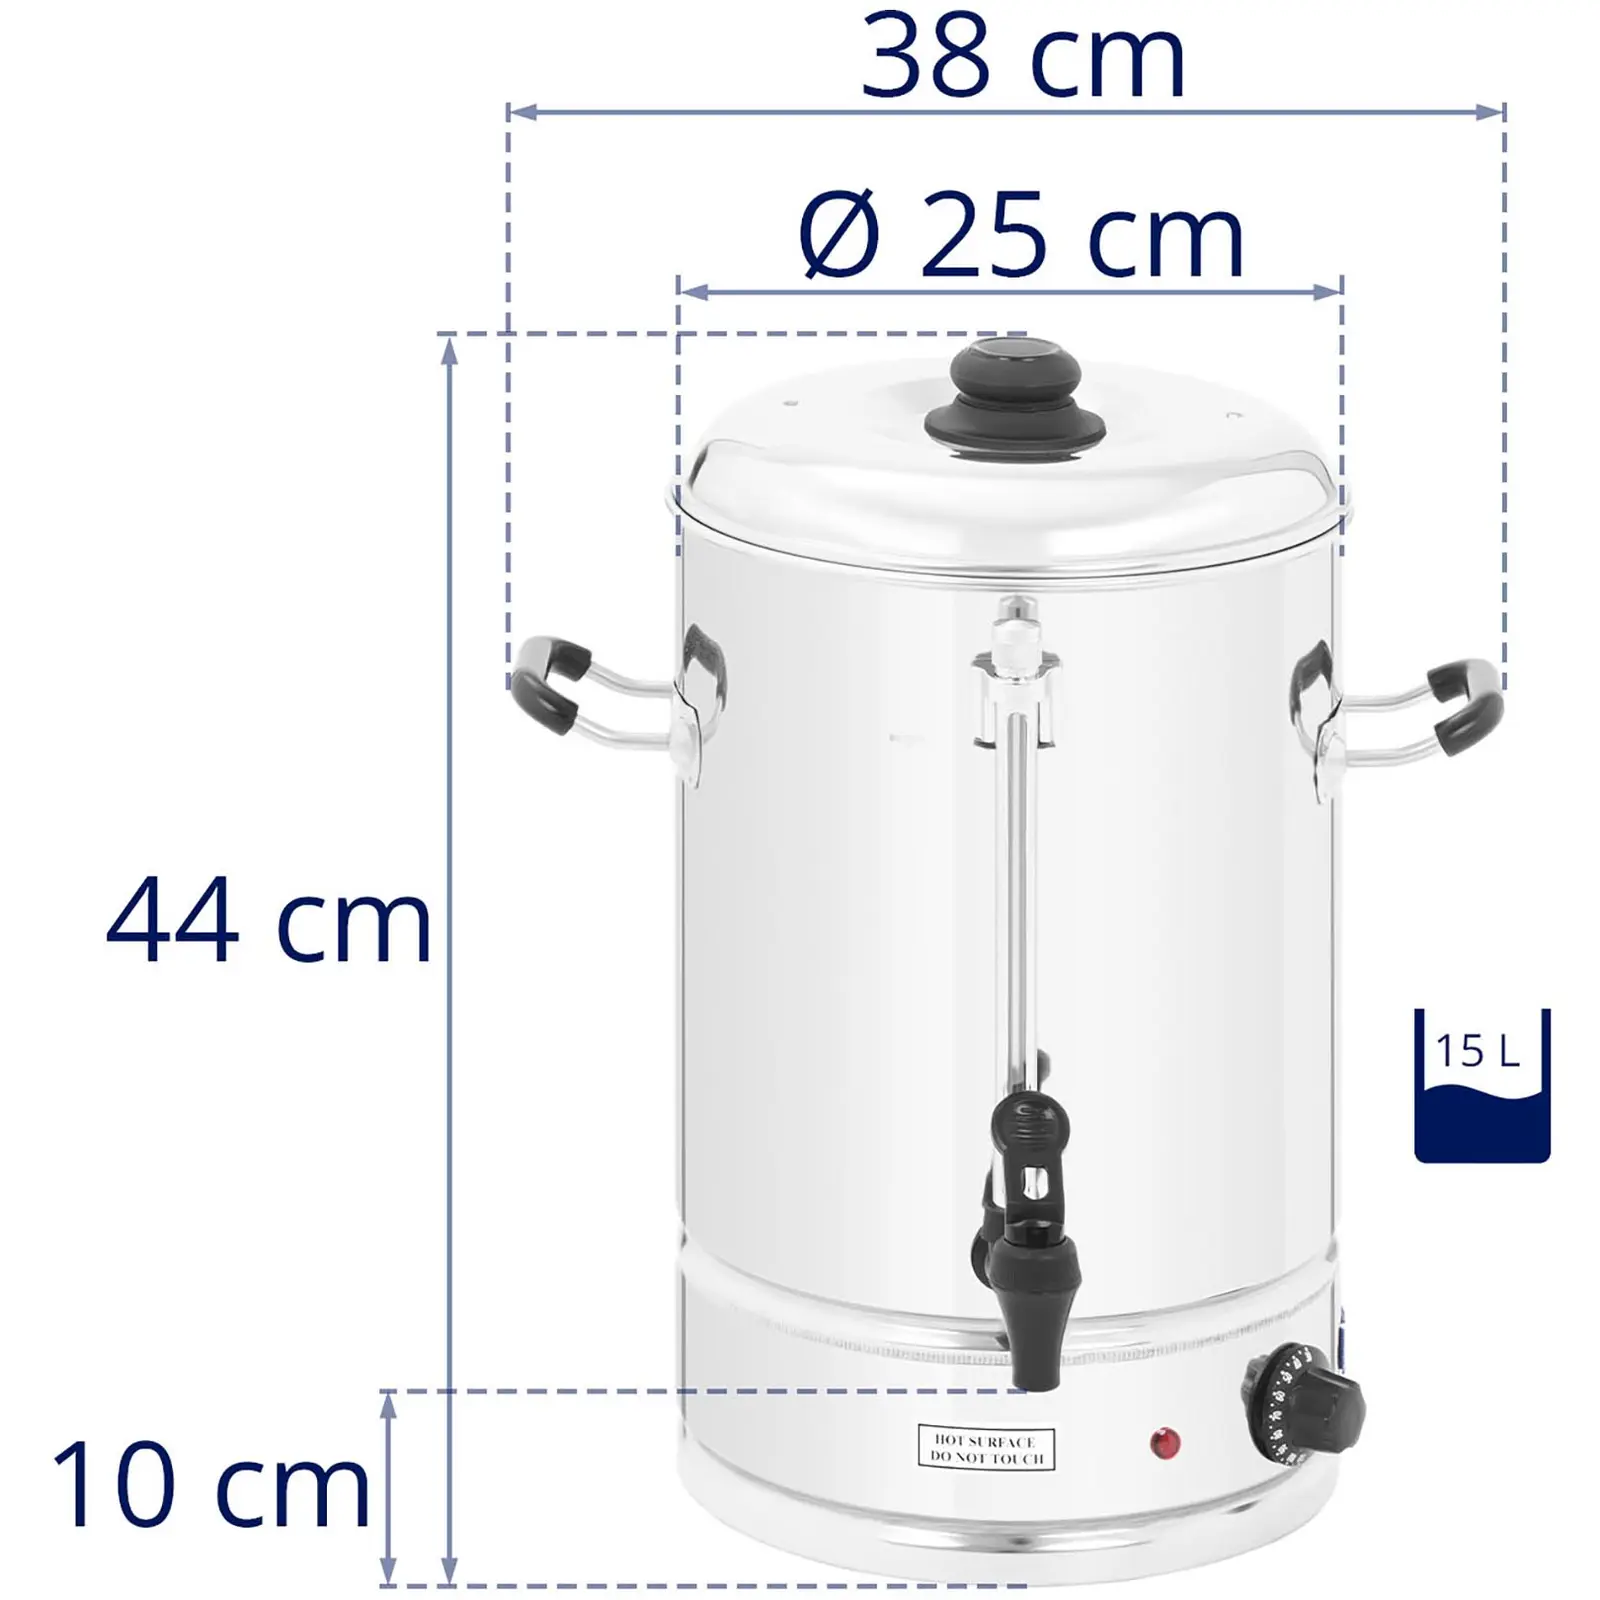 Varmtvannsdispenser - 15 liter - 2,500 W